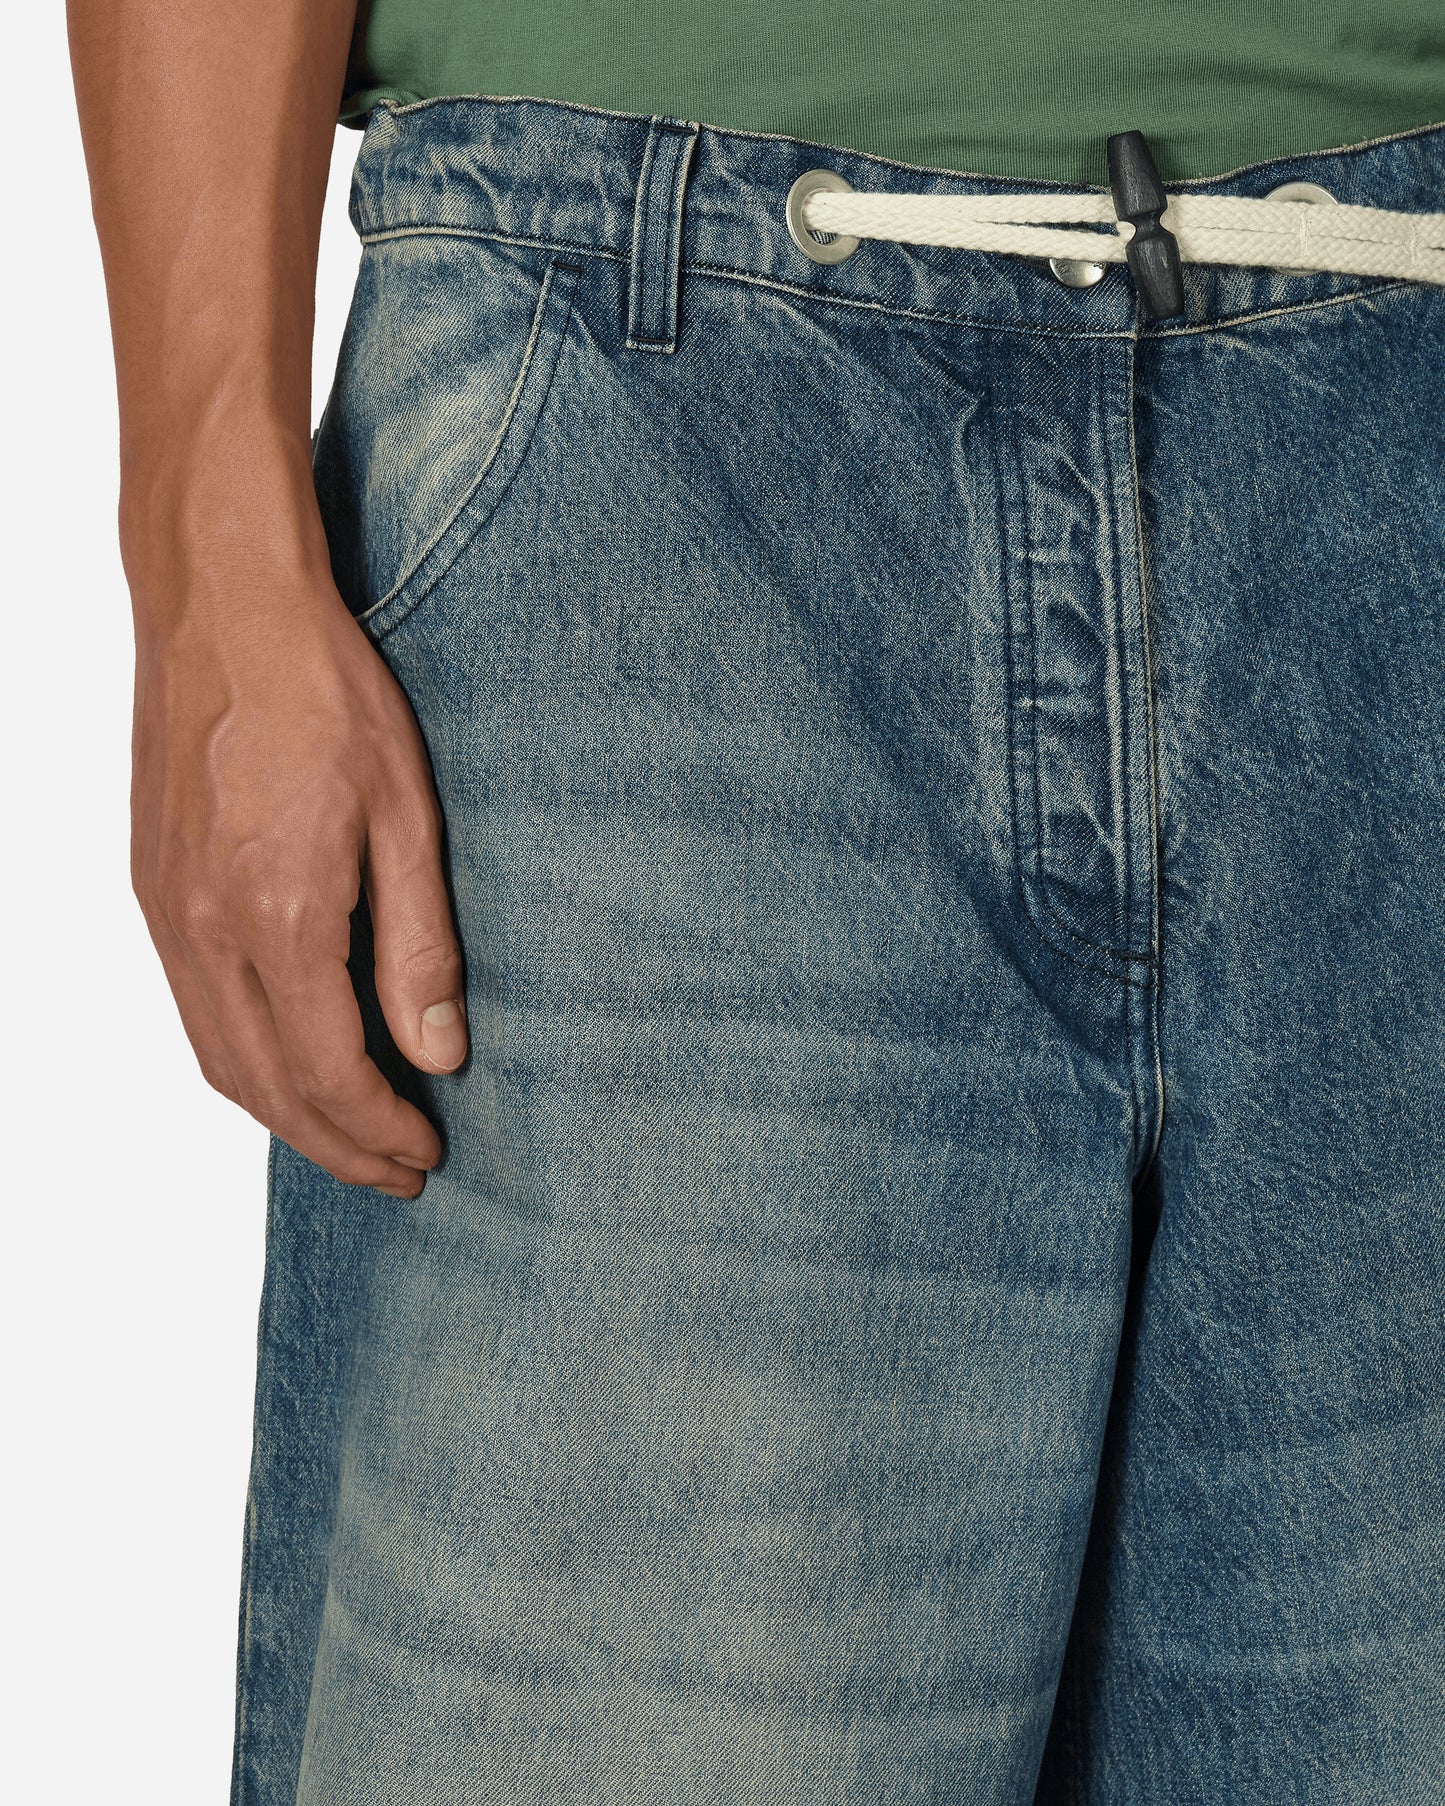 Moncler Genius Trousers X Palm Angels Indigo Pants Denim 2A00001M3414 780